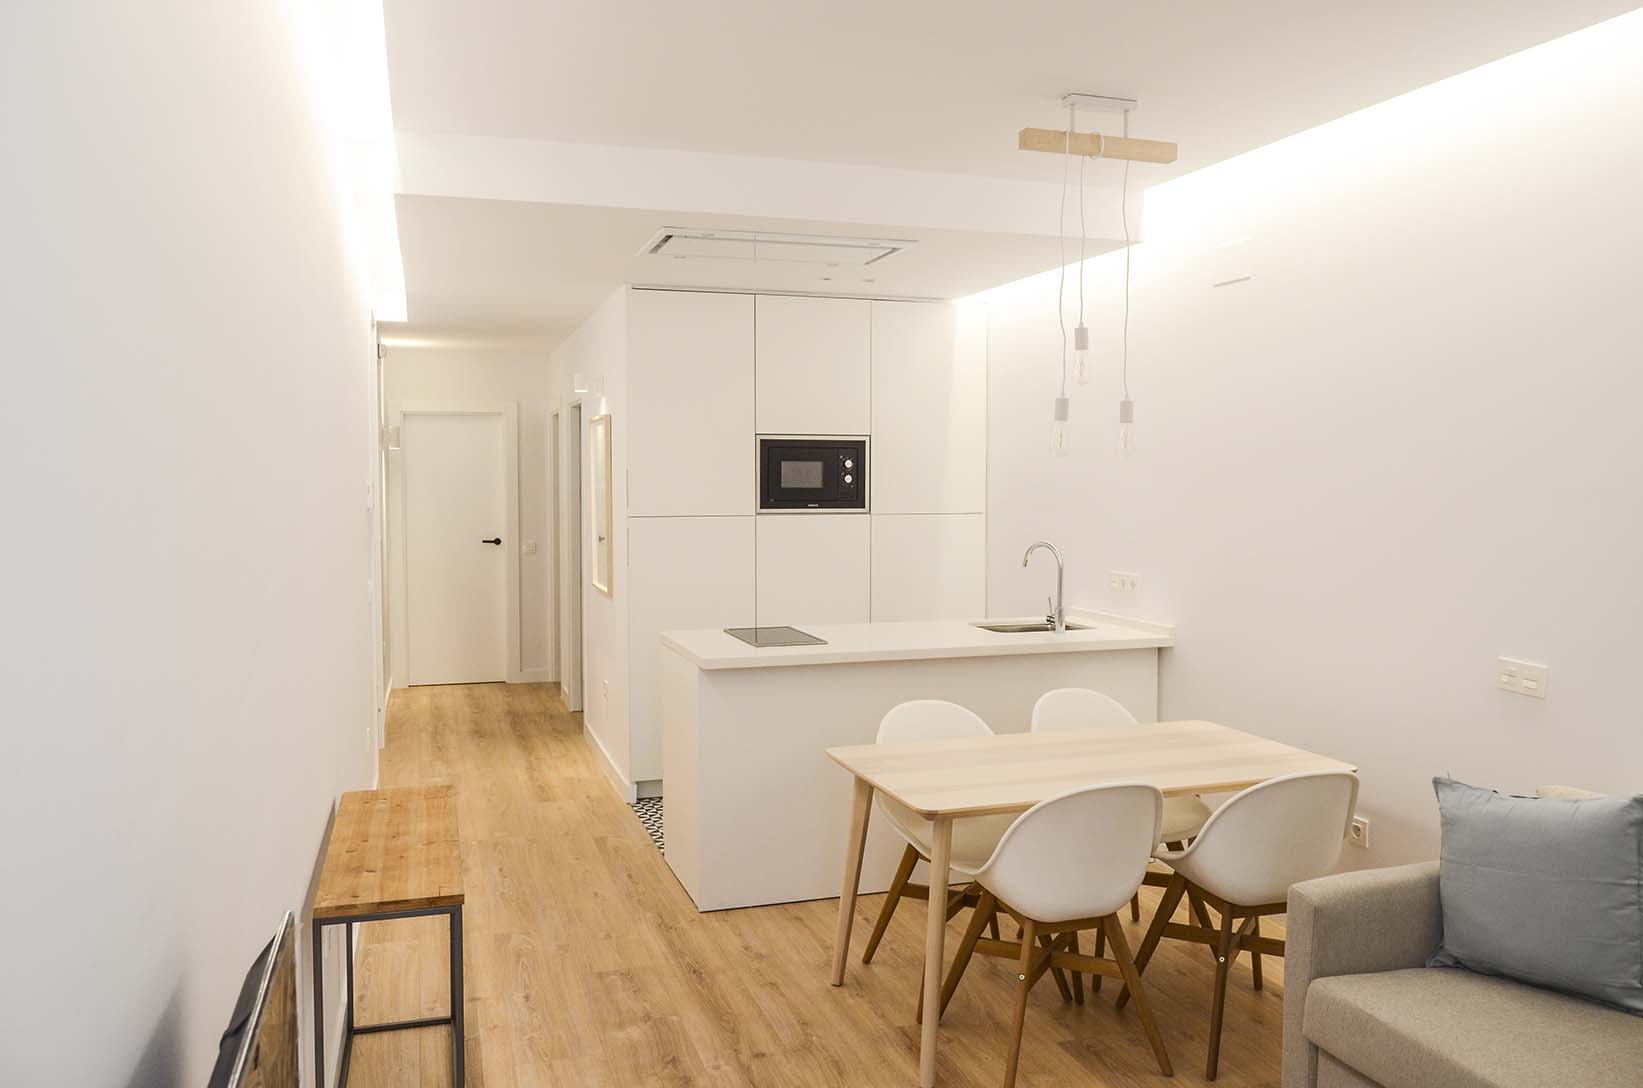 Los seis apartamentos de 1 o 2 dormitorios, tienen la misma forma de resolver el espacio por lo que las cocinas son simétricas e iguales.